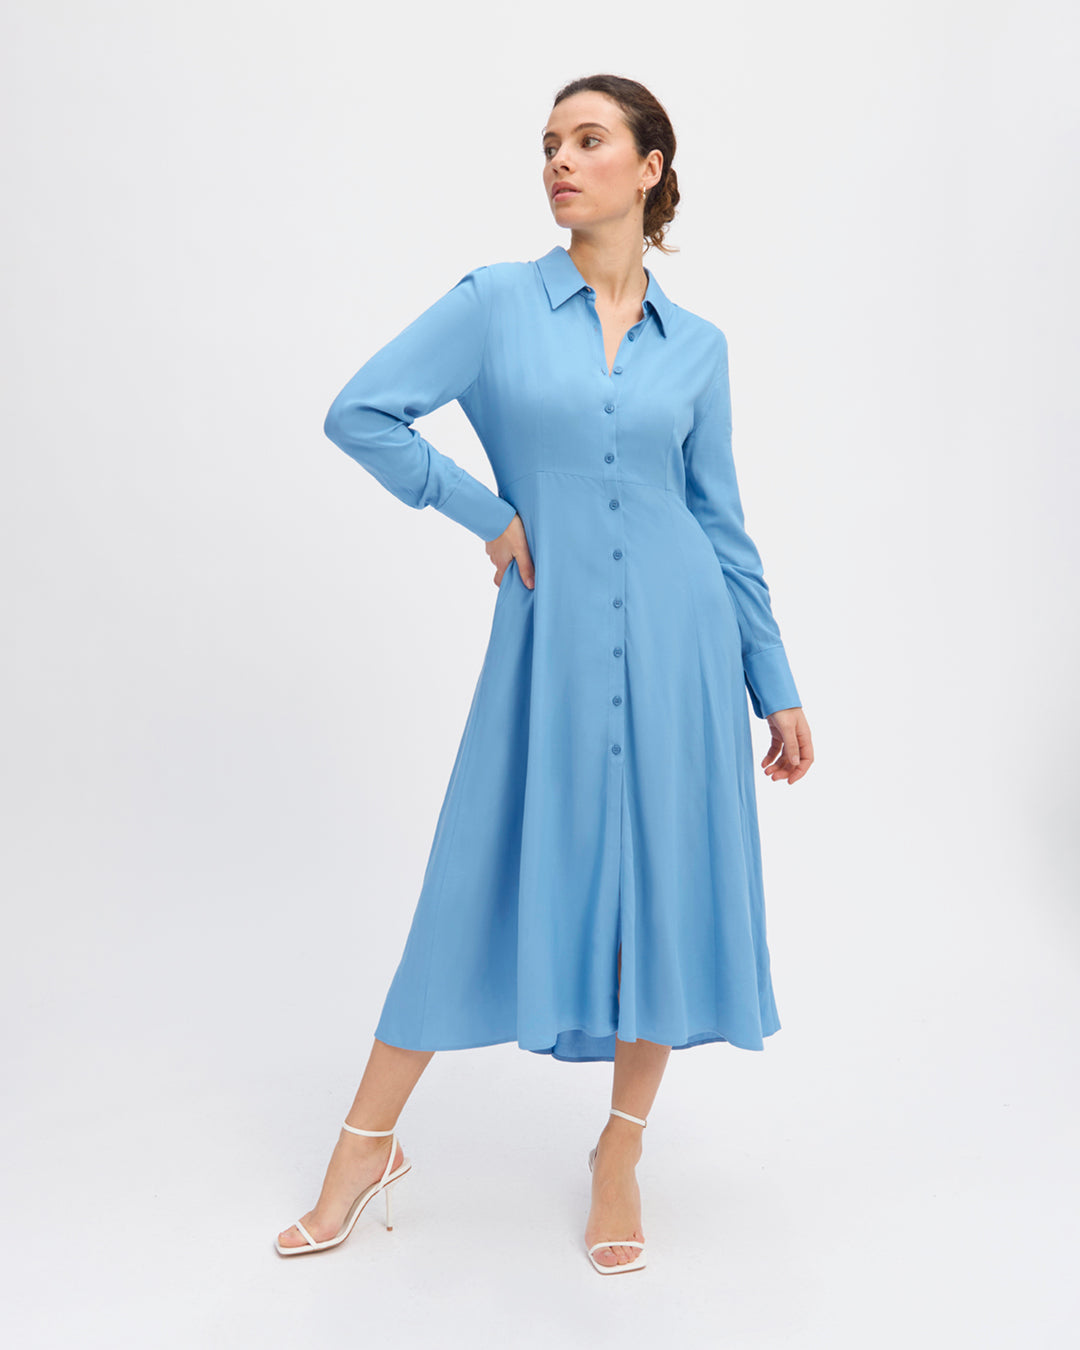 Robe-bleue-Longueur-midi-Col-chemise-Manche-longues-avec-poignets-boutonnés-Patte-de-boutonnage-cachée-Cintrée-à-la-taille-17H10-tailleurs-pour-femme-paris-